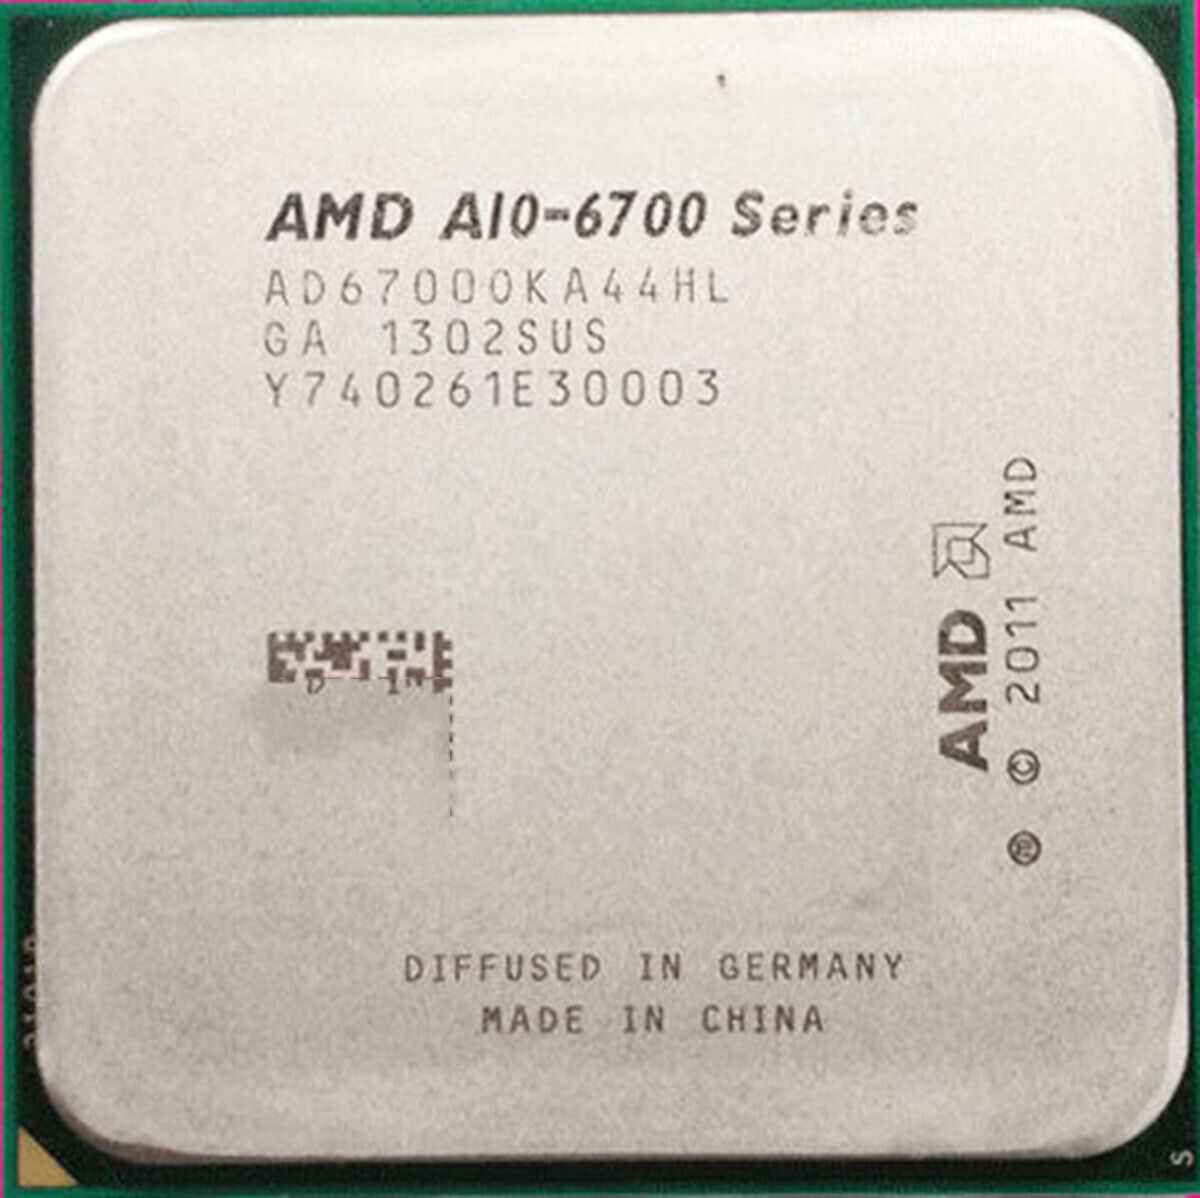 AMD a10-6700 CPU a10 series quad-core 4mb 3.7ghz interface fm2 65w processor